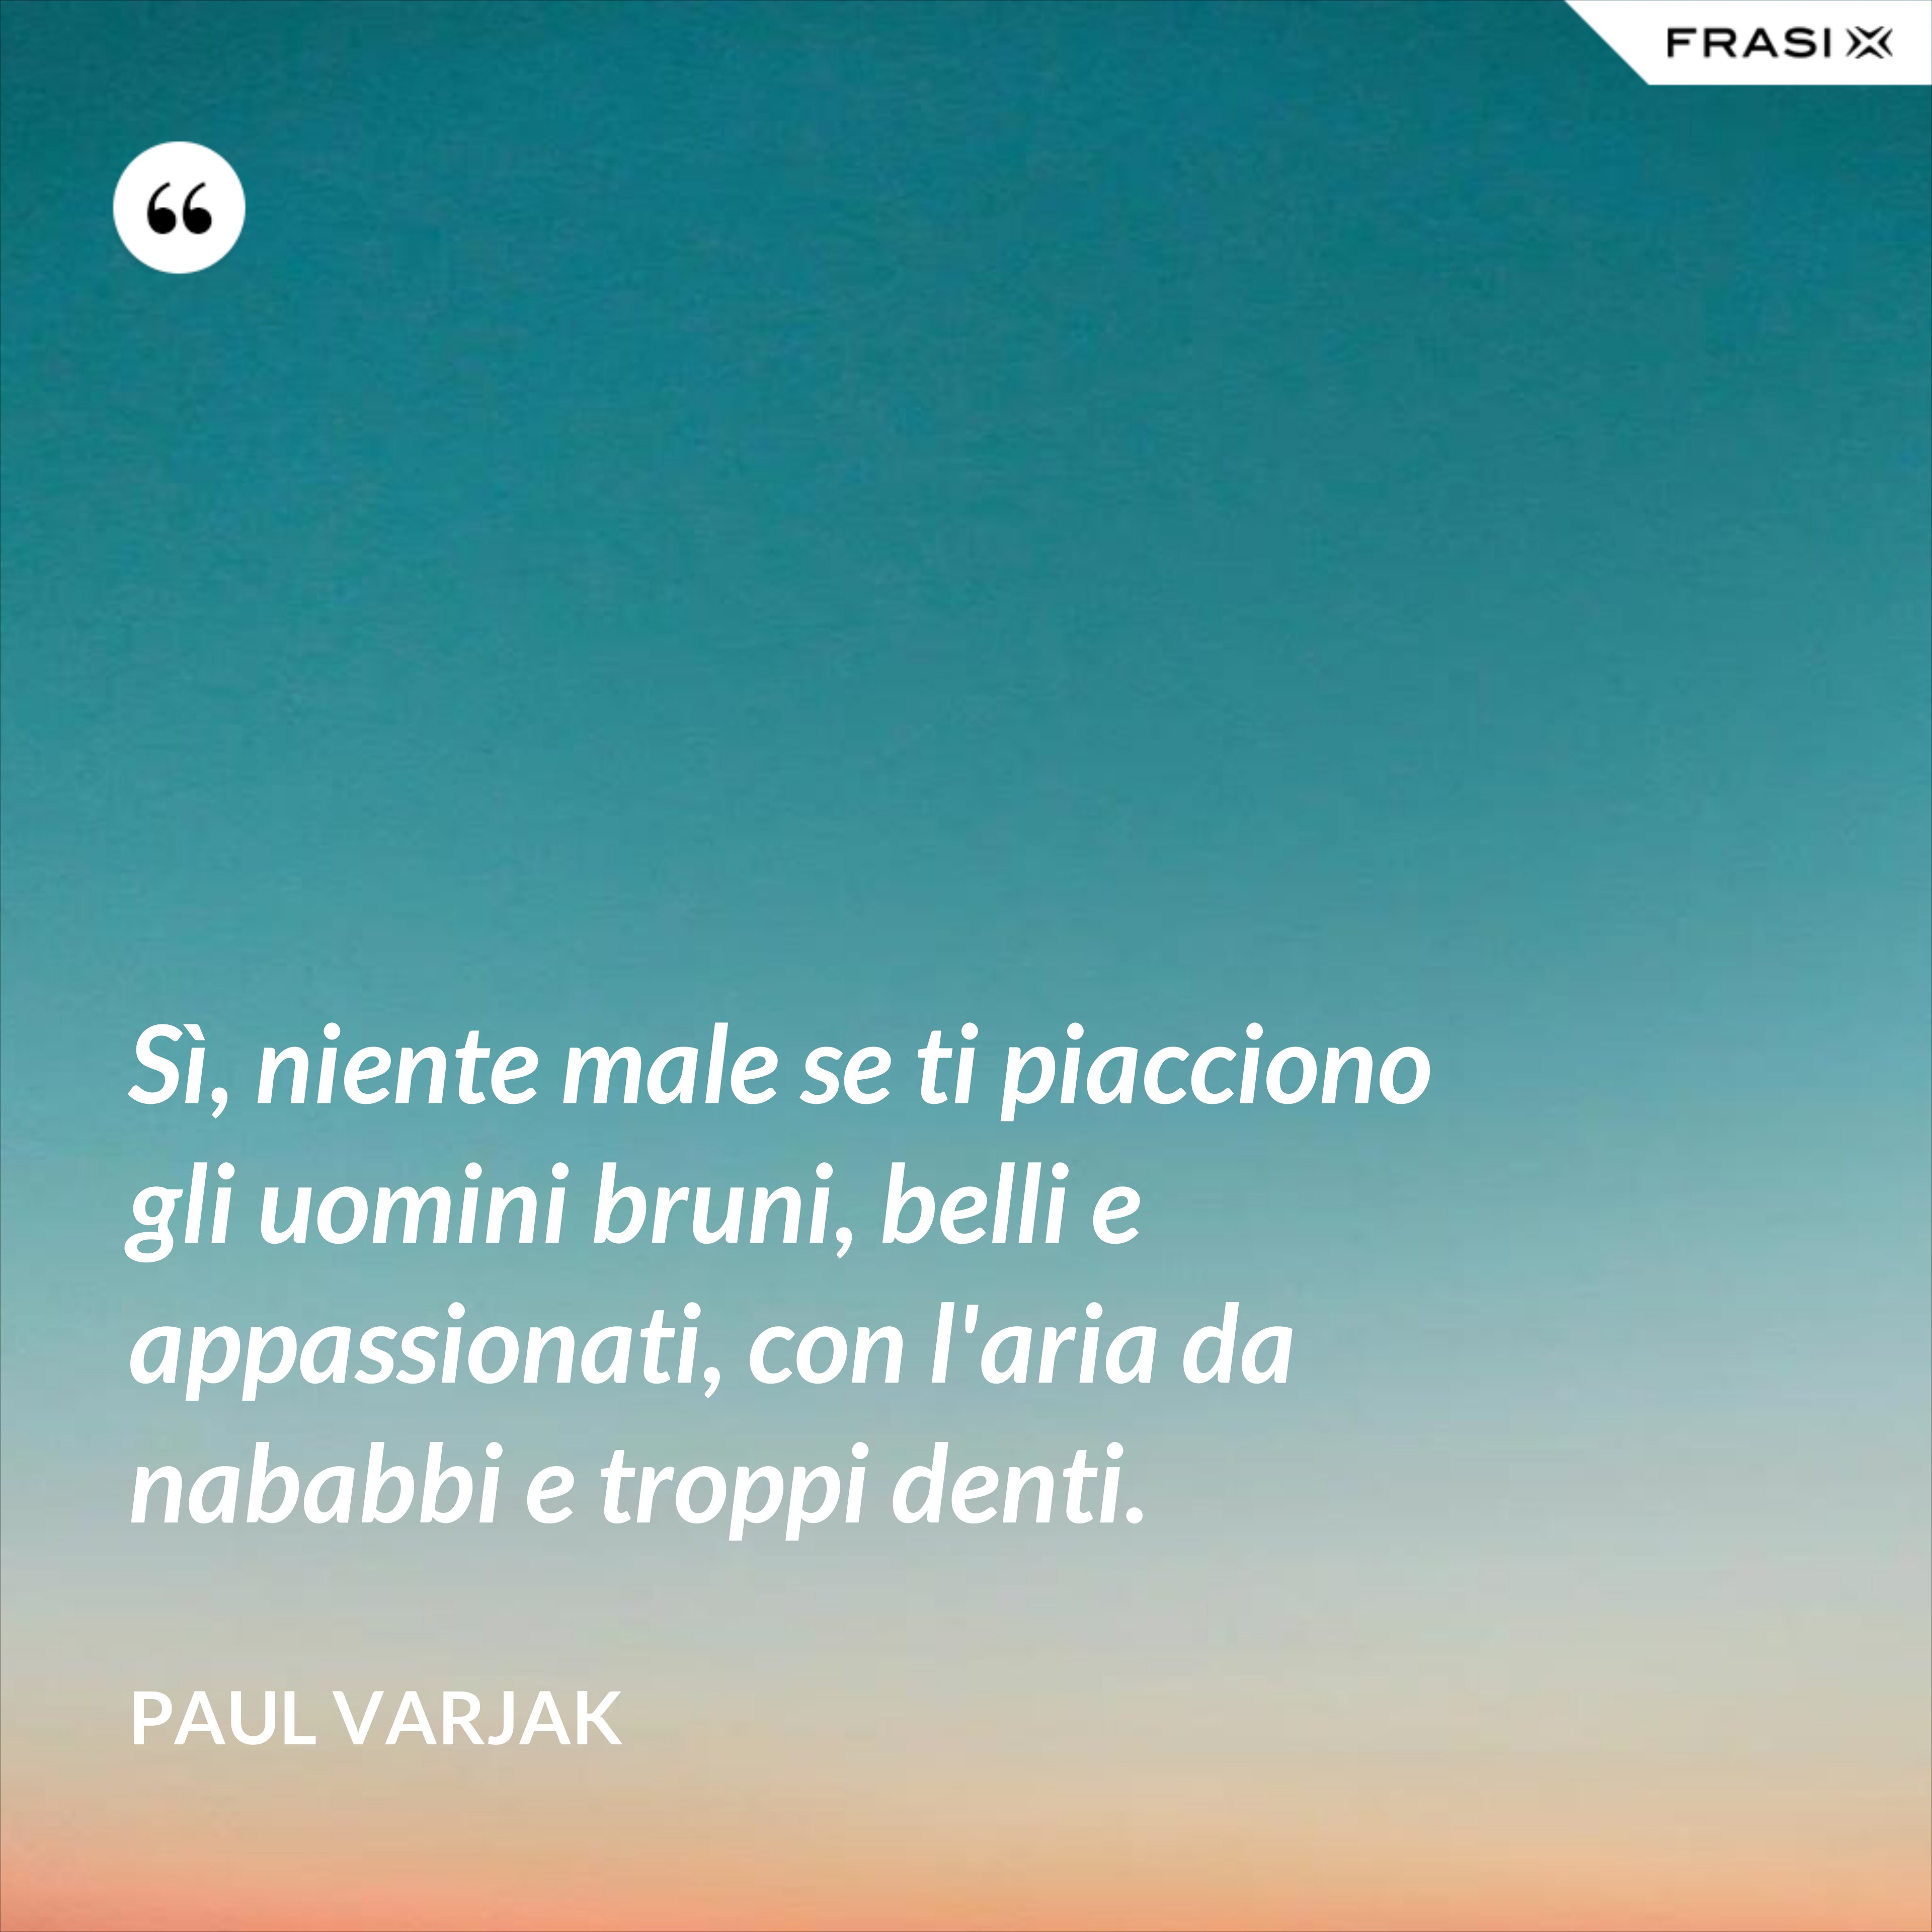 Sì, niente male se ti piacciono gli uomini bruni, belli e appassionati, con l'aria da nababbi e troppi denti. - Paul Varjak